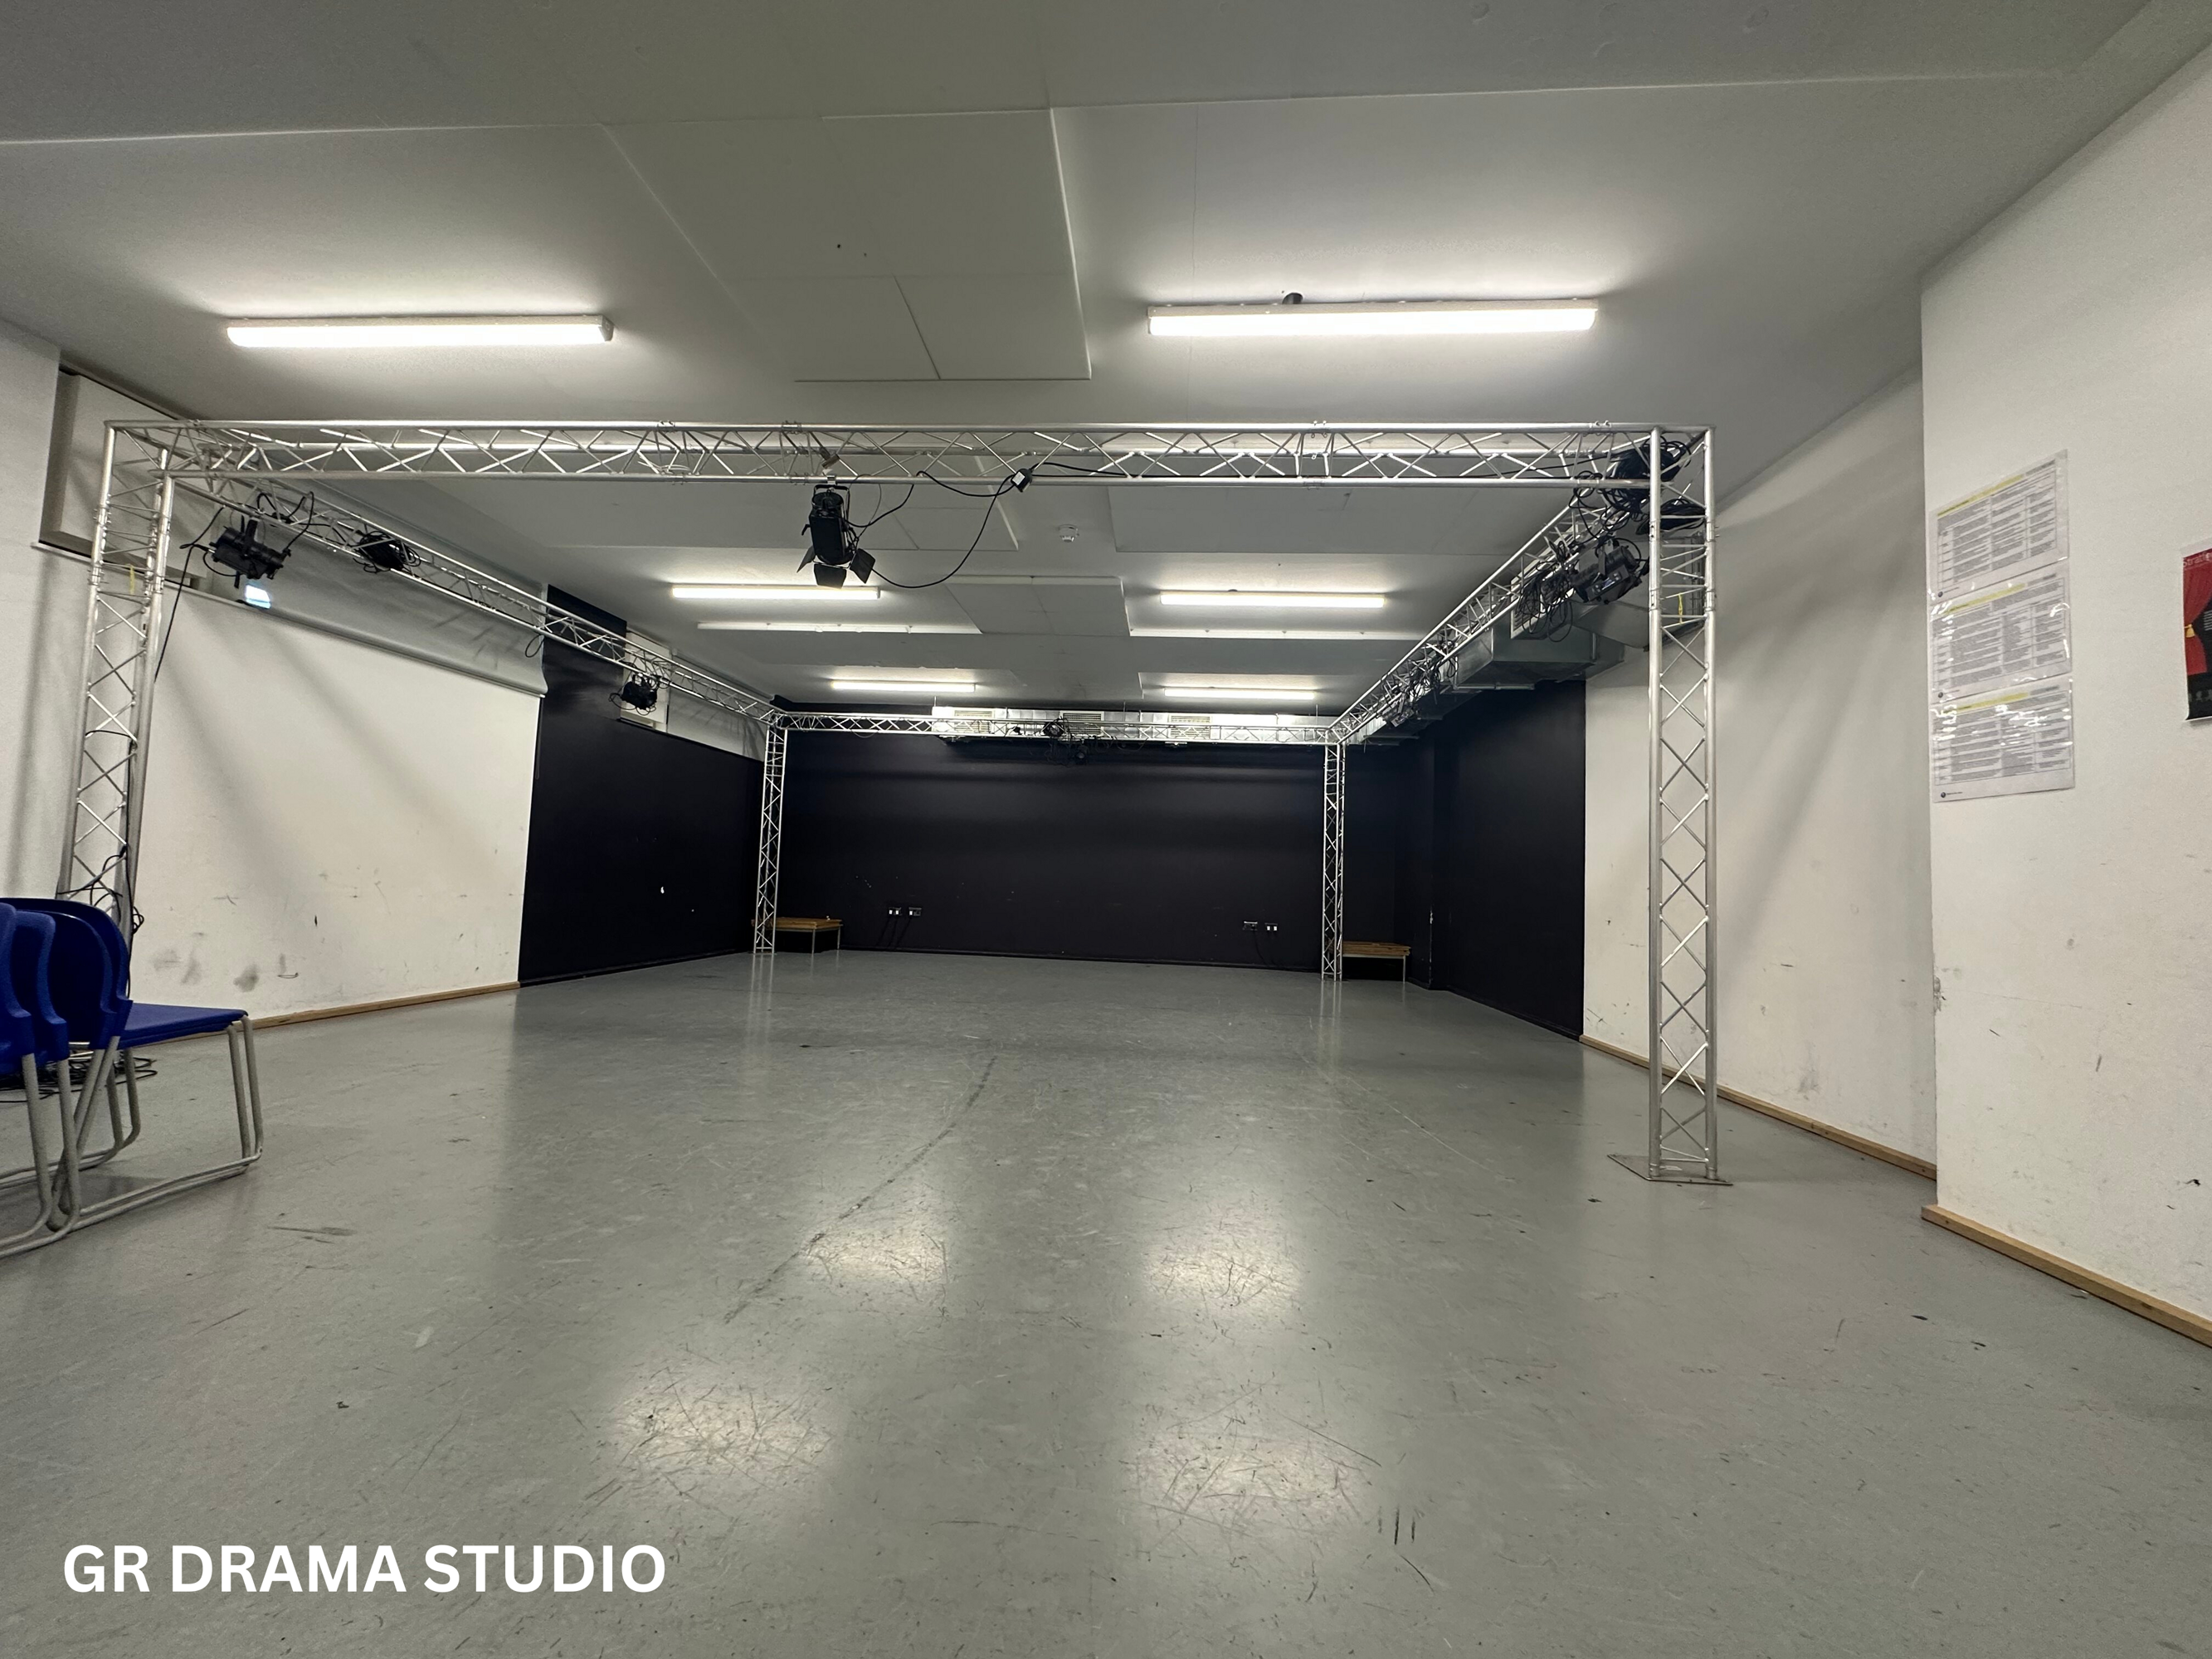 Gr drama studio